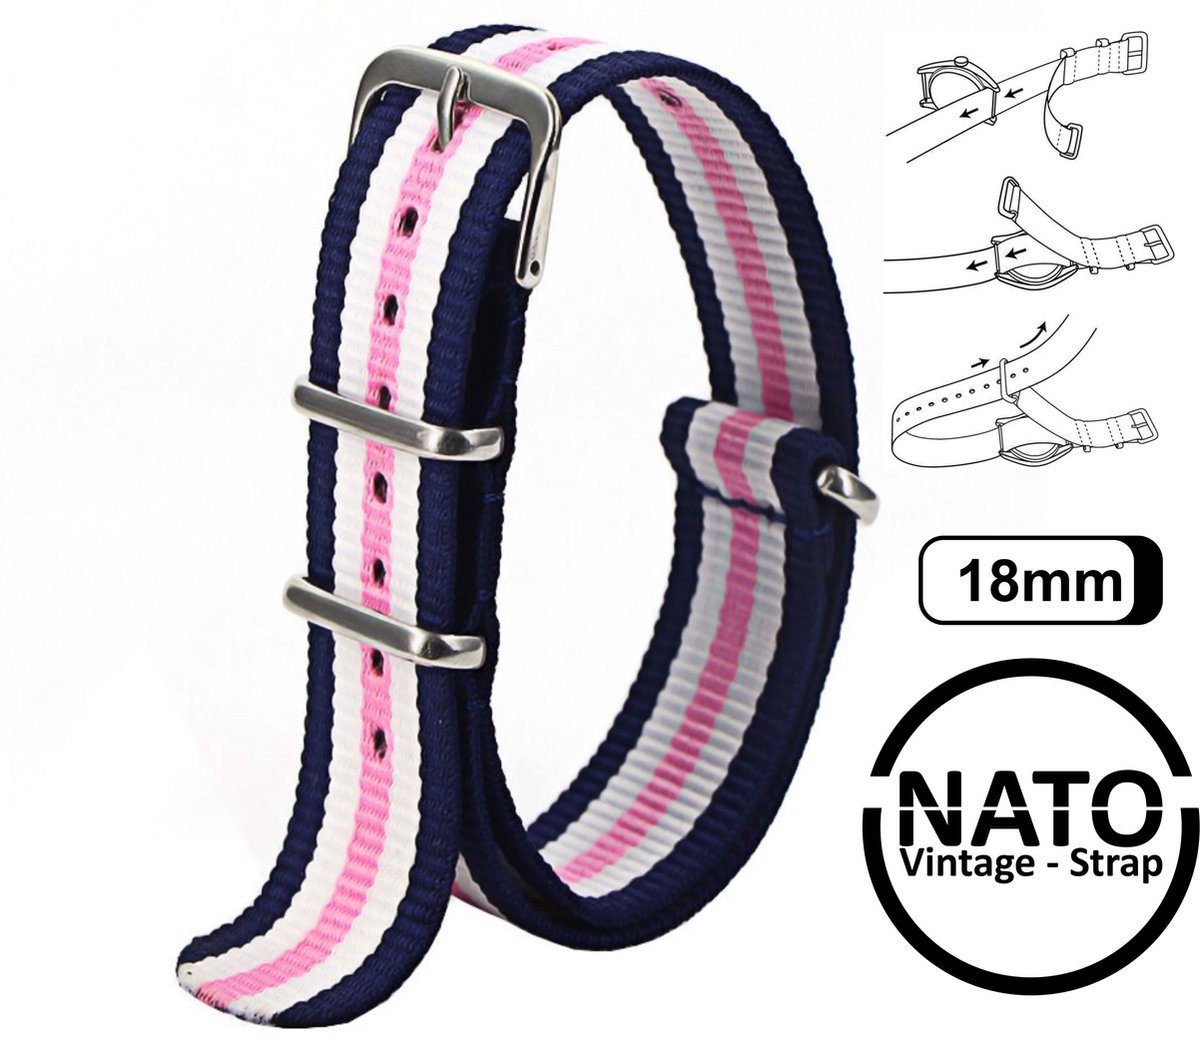 18mm Premium Nato Strap Blauw Roze Wit - Vintage James Bond - Nato Strap collectie - Mannen - Horlogeband - 18 mm bandbreedte voor oa. Seiko Rolex Omega Casio en Citizen